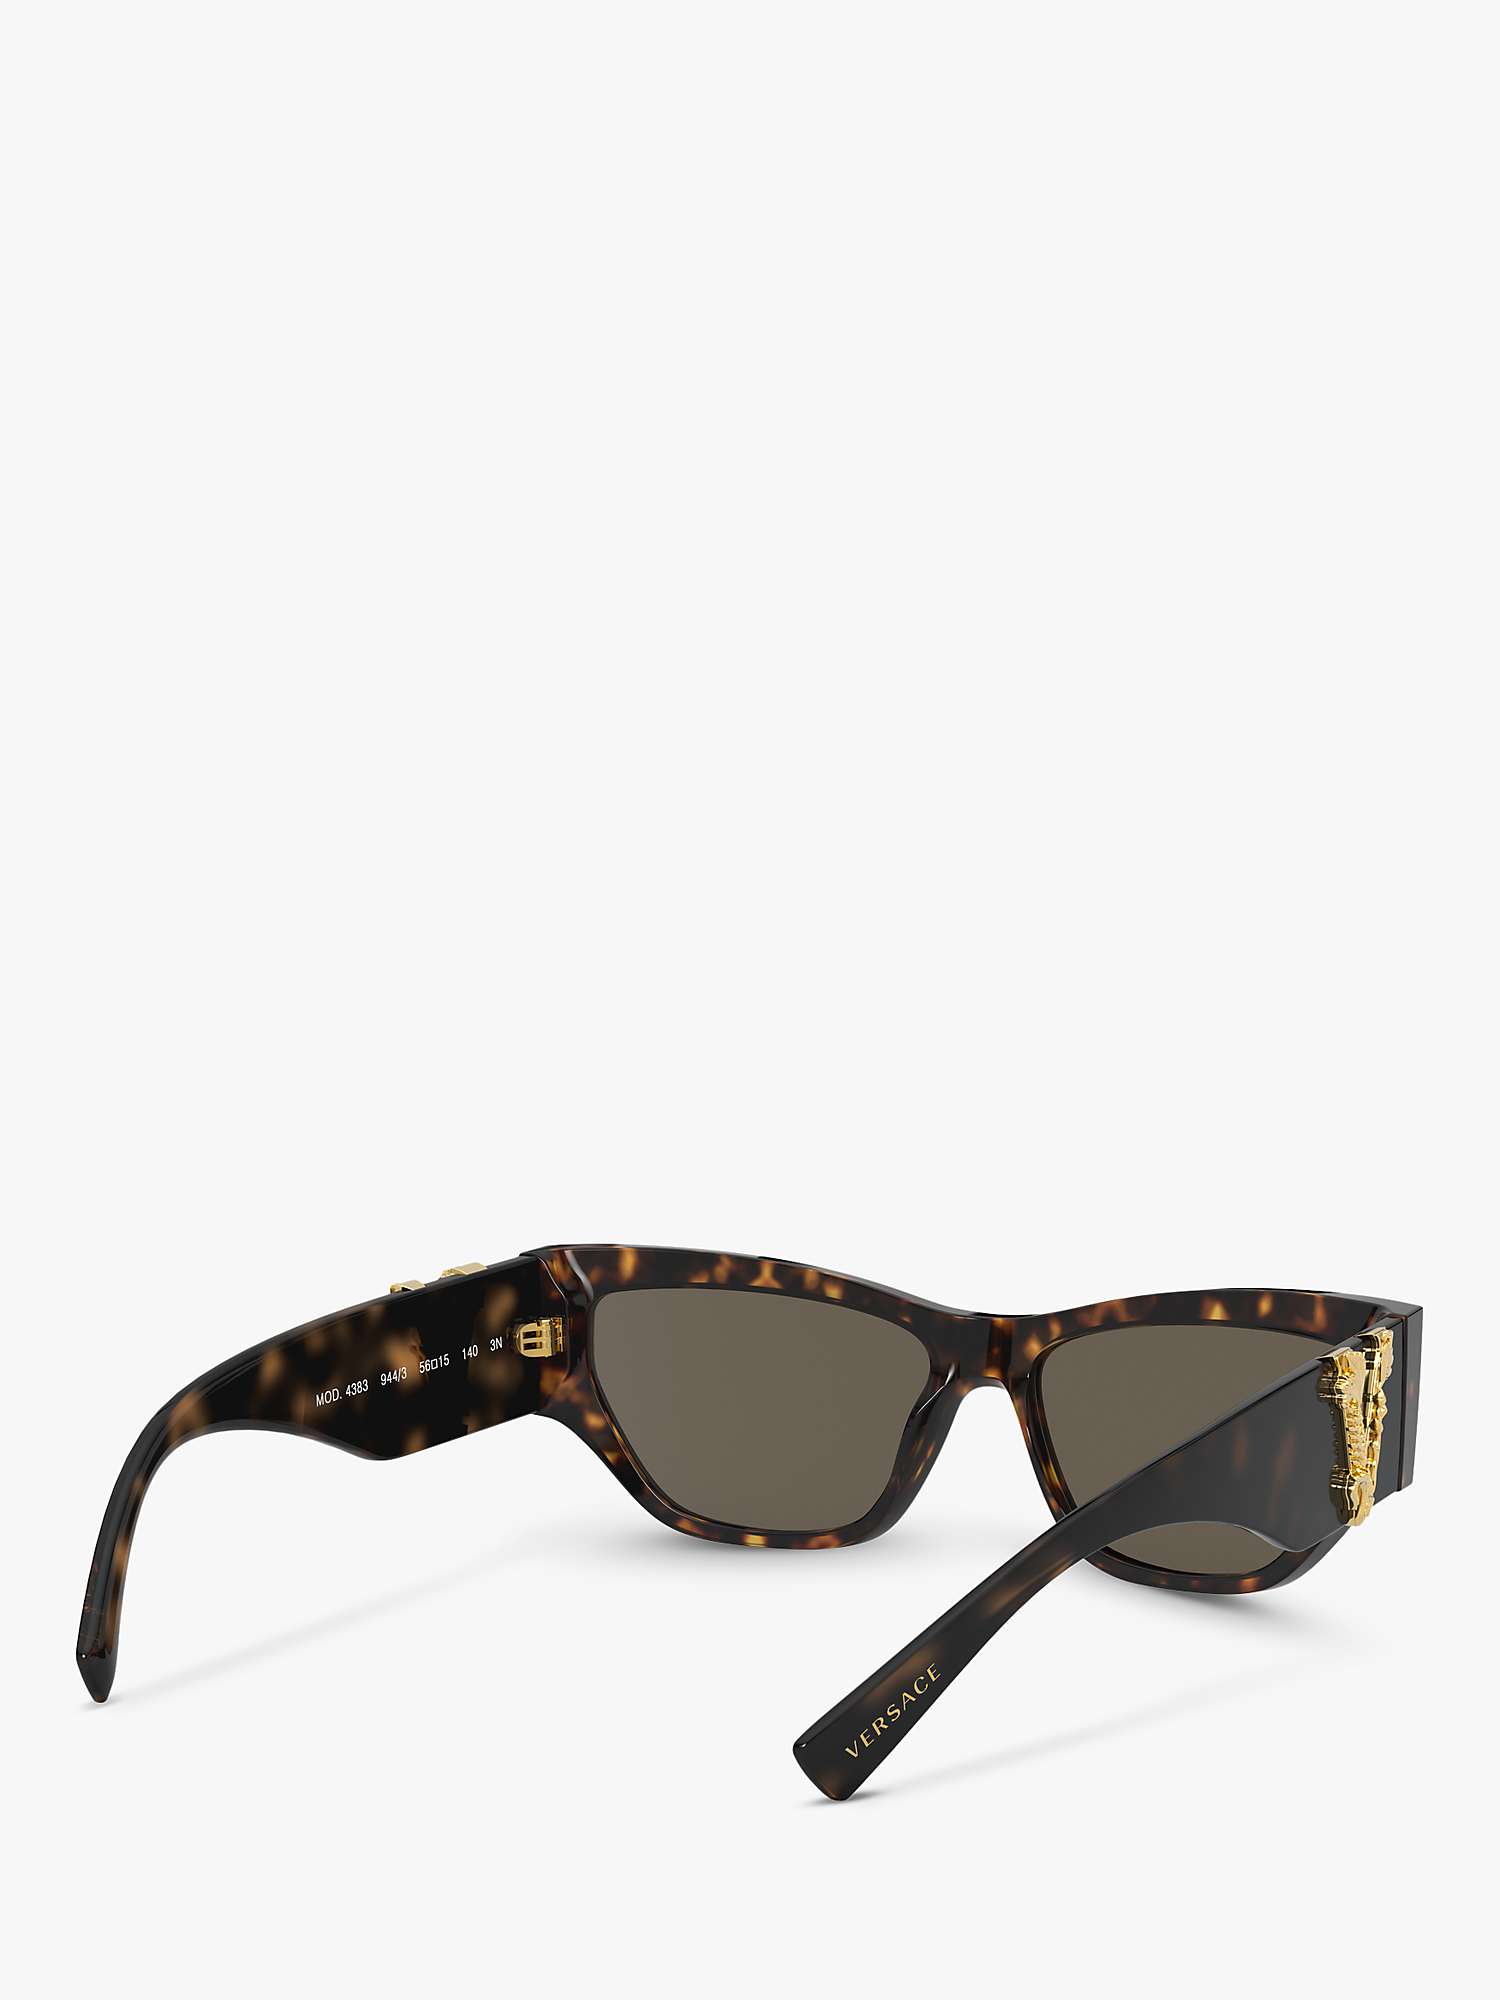 Buy Versace VE4383 Women's Cat Eye Sunglasses, Havana/Gold Online at johnlewis.com